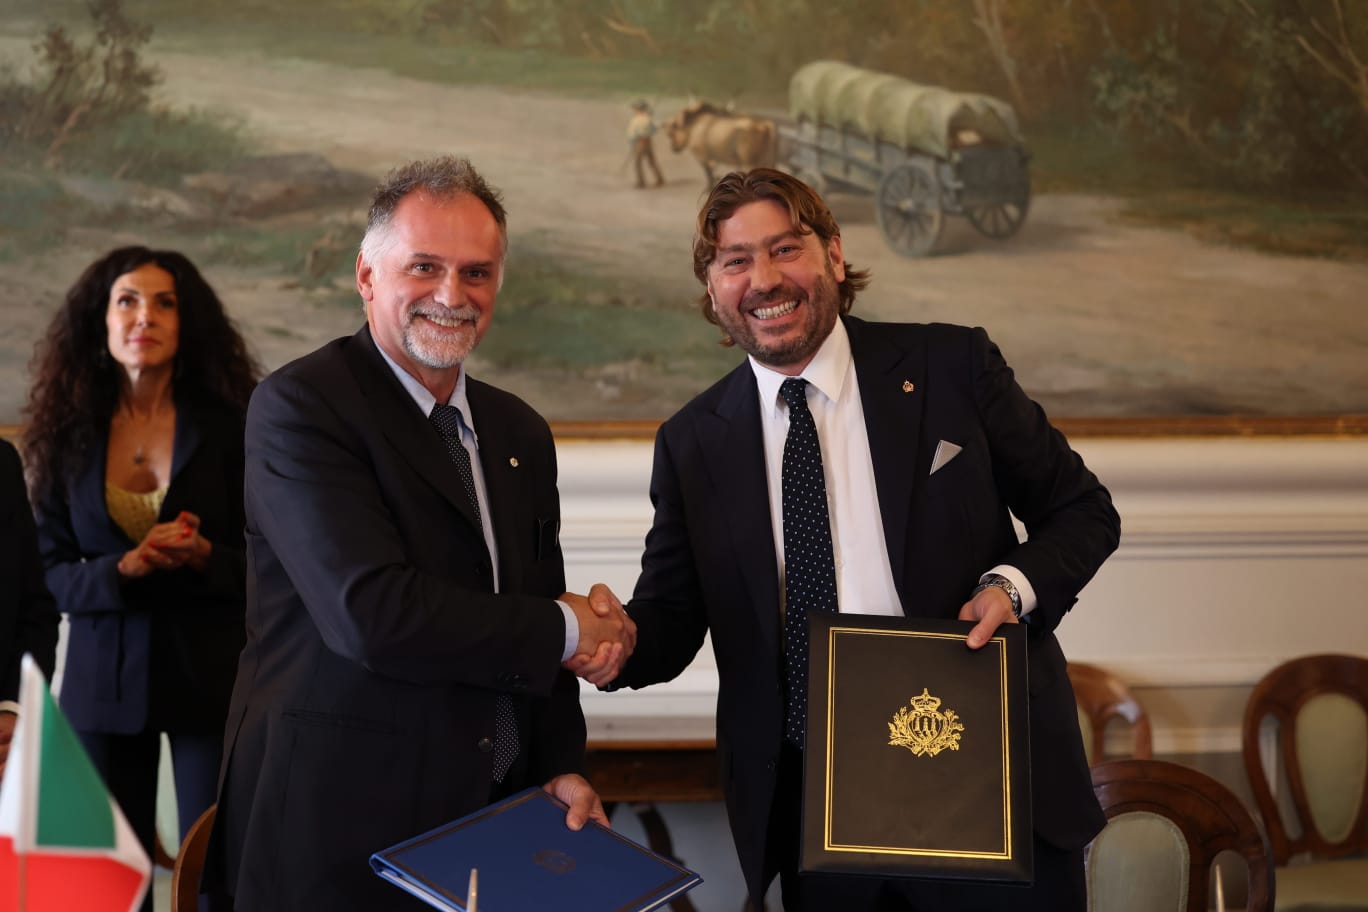 Il Ministro del Turismo della Repubblica Italiana Massimo Garavaglia in visita Ufficiale a San Marino